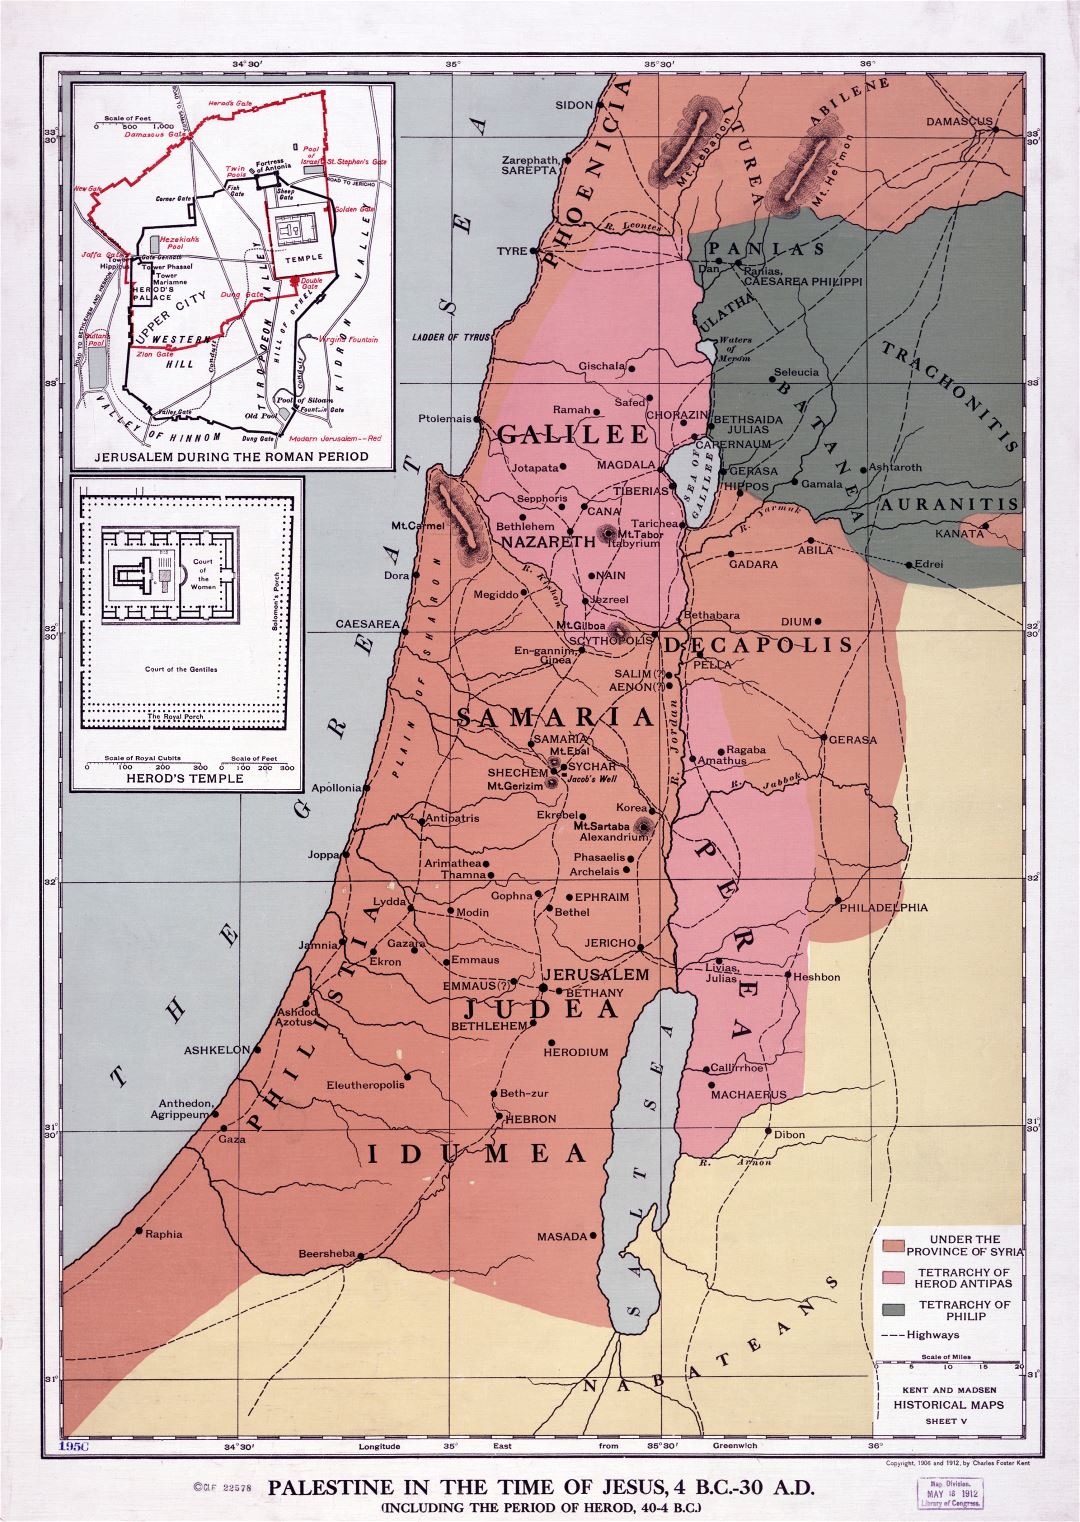 Grande detallado antiguo mapa de Palestina en la época de Jesús 4 aC - 30 dC - 1912